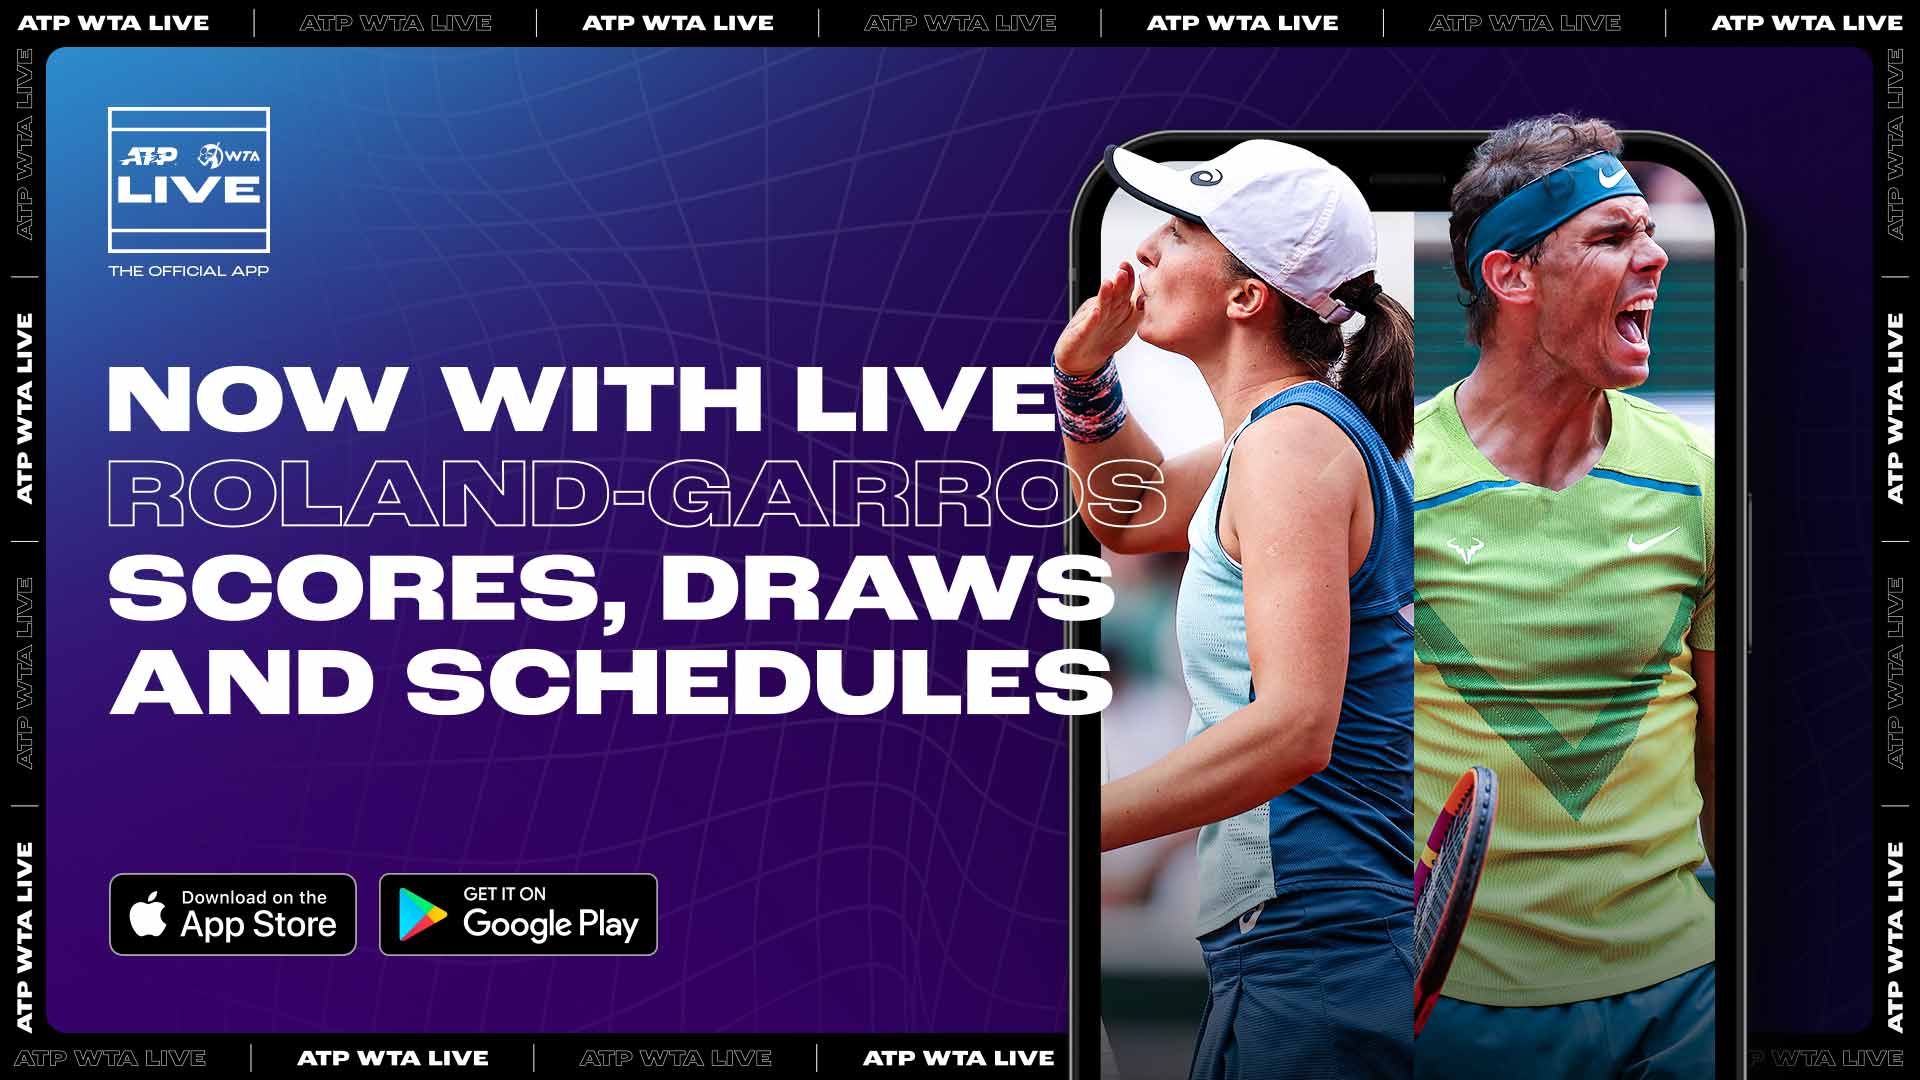 Sigue Los Marcadores En Vivo De Roland Garros La App ATP WTA | ATP Tour | Tenis